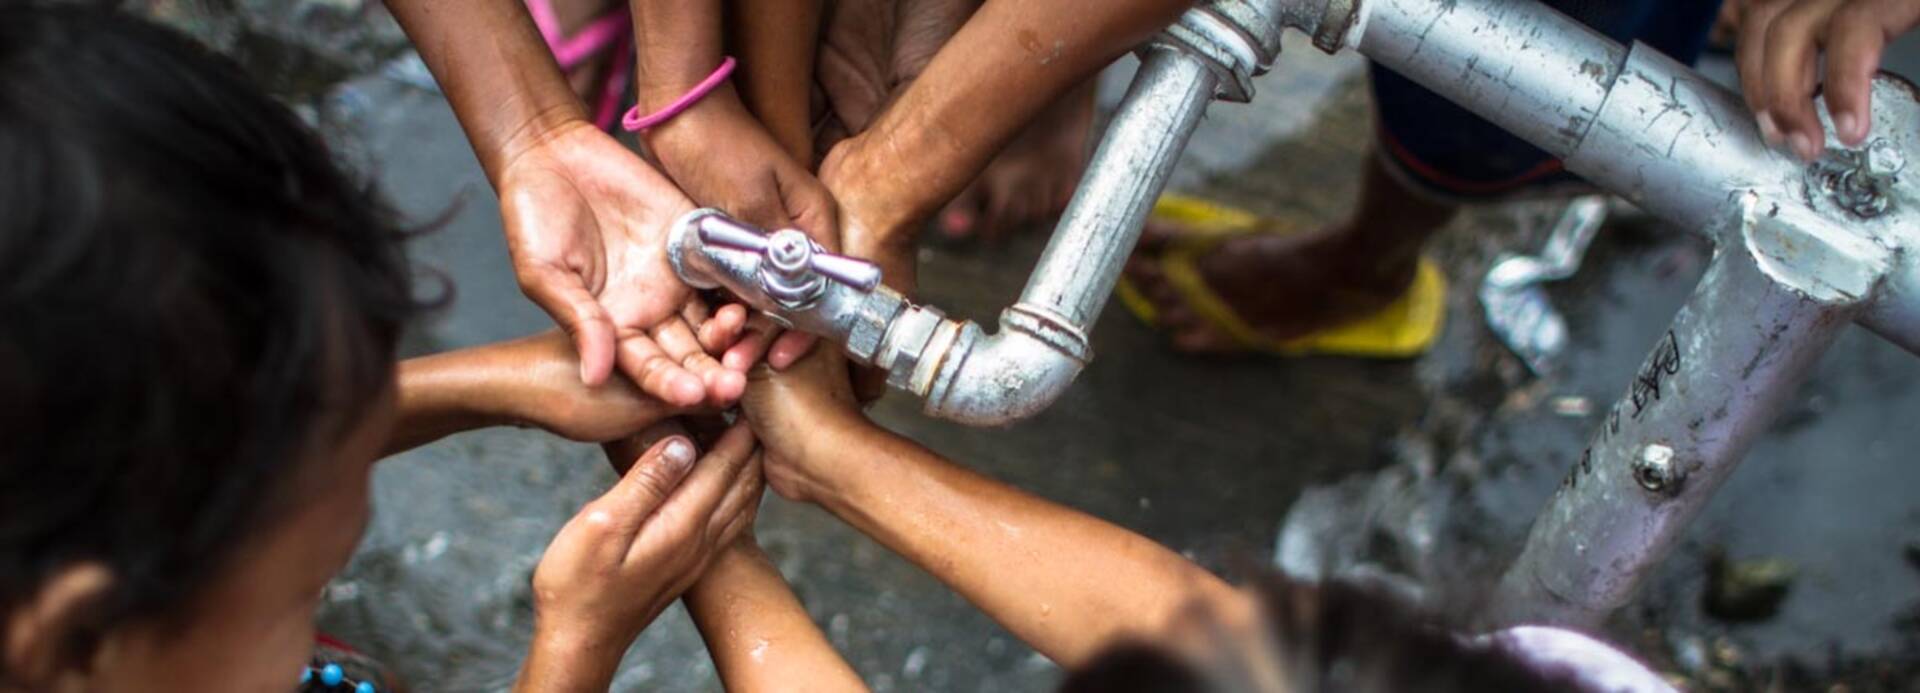 Kinder waschen sich die Hände unter einem Wasserhahn.